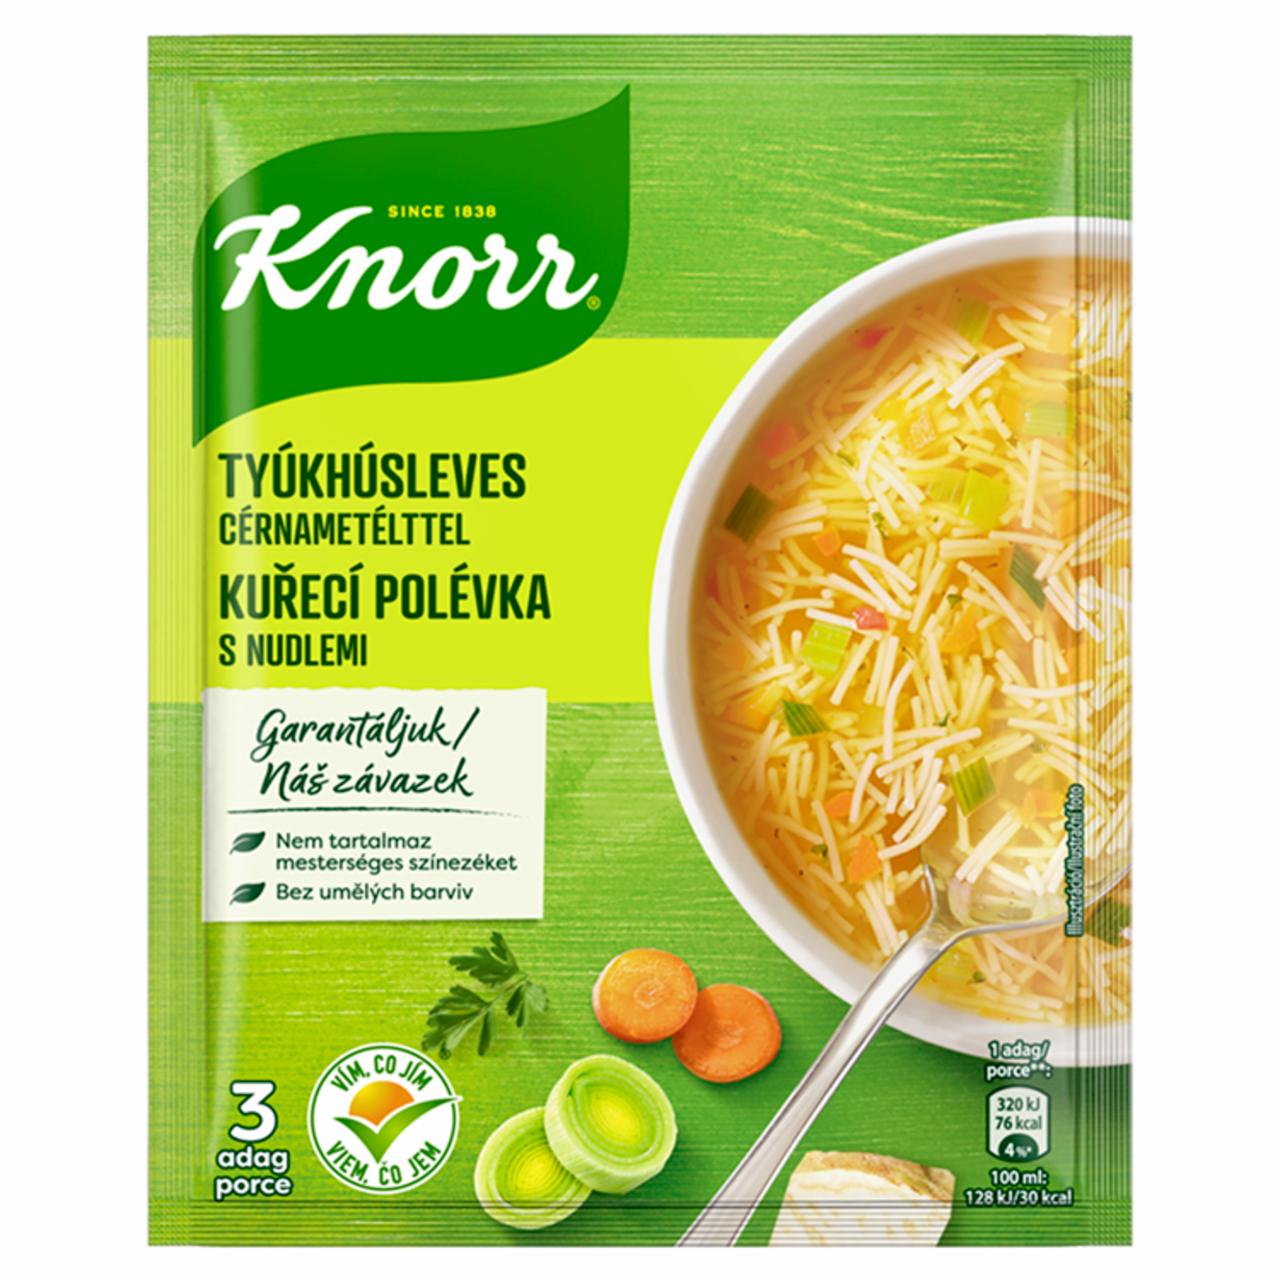 Képek - Knorr tyúkleves cérnametélttel 69 g